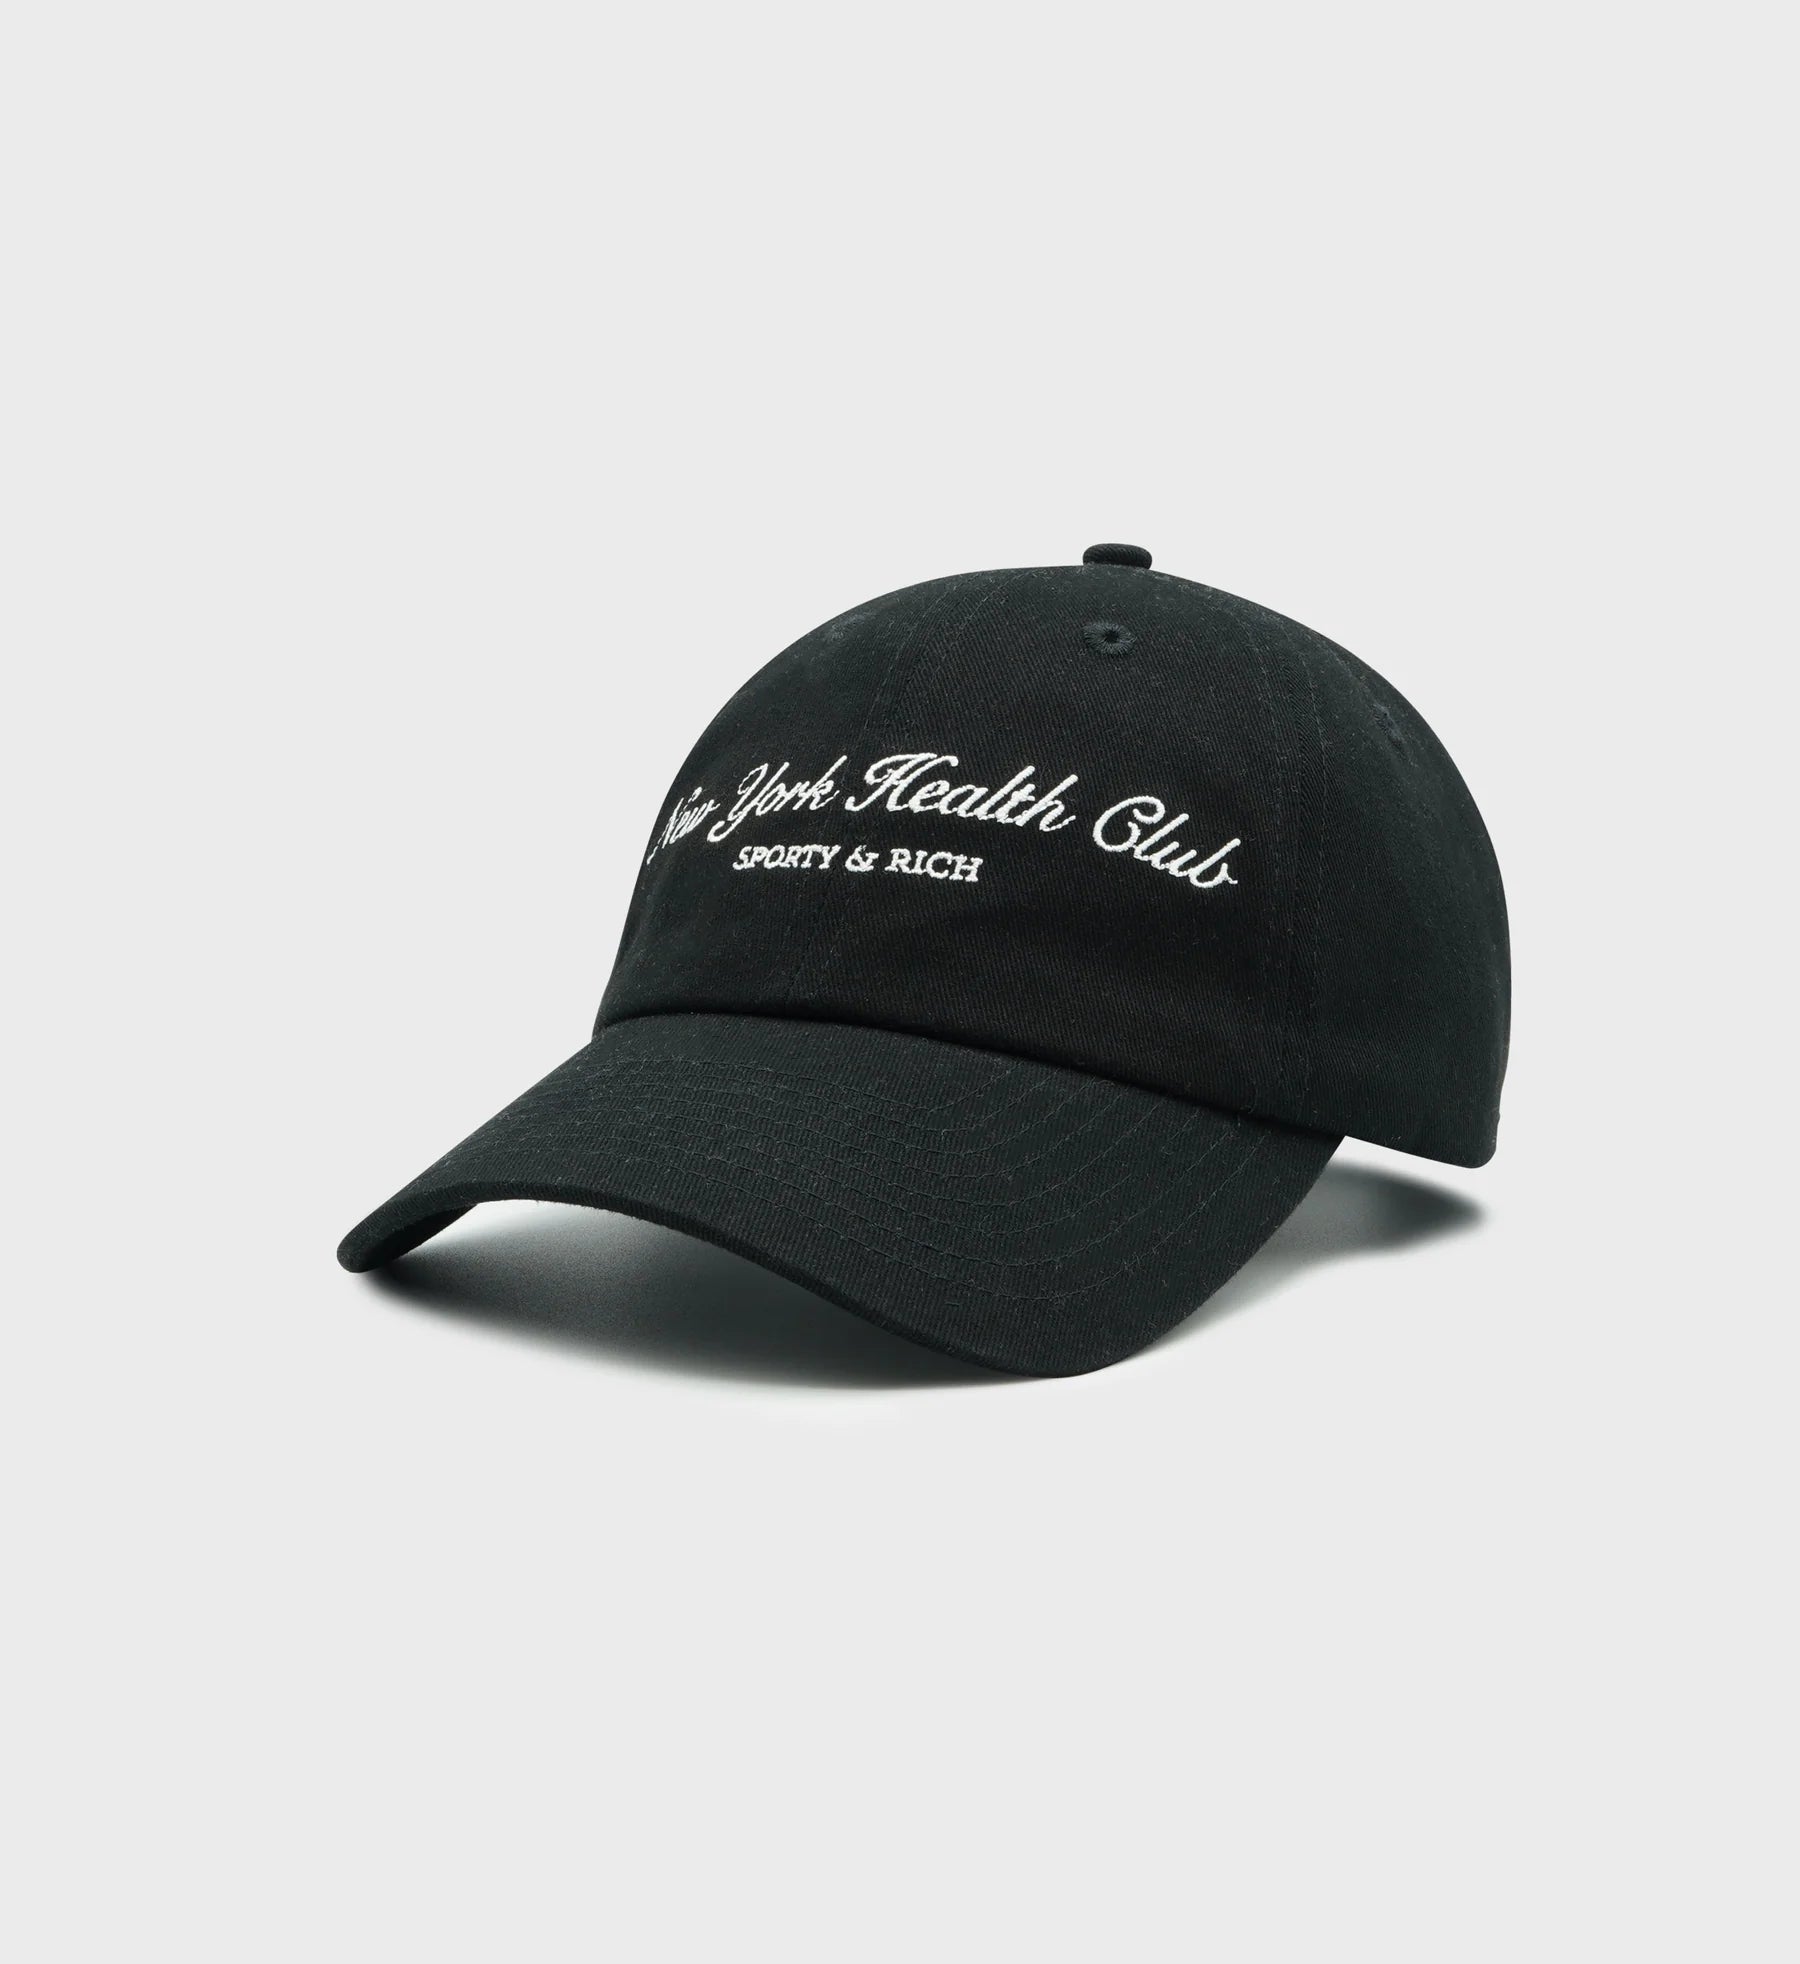 NY Health Club Hat - Faded Black